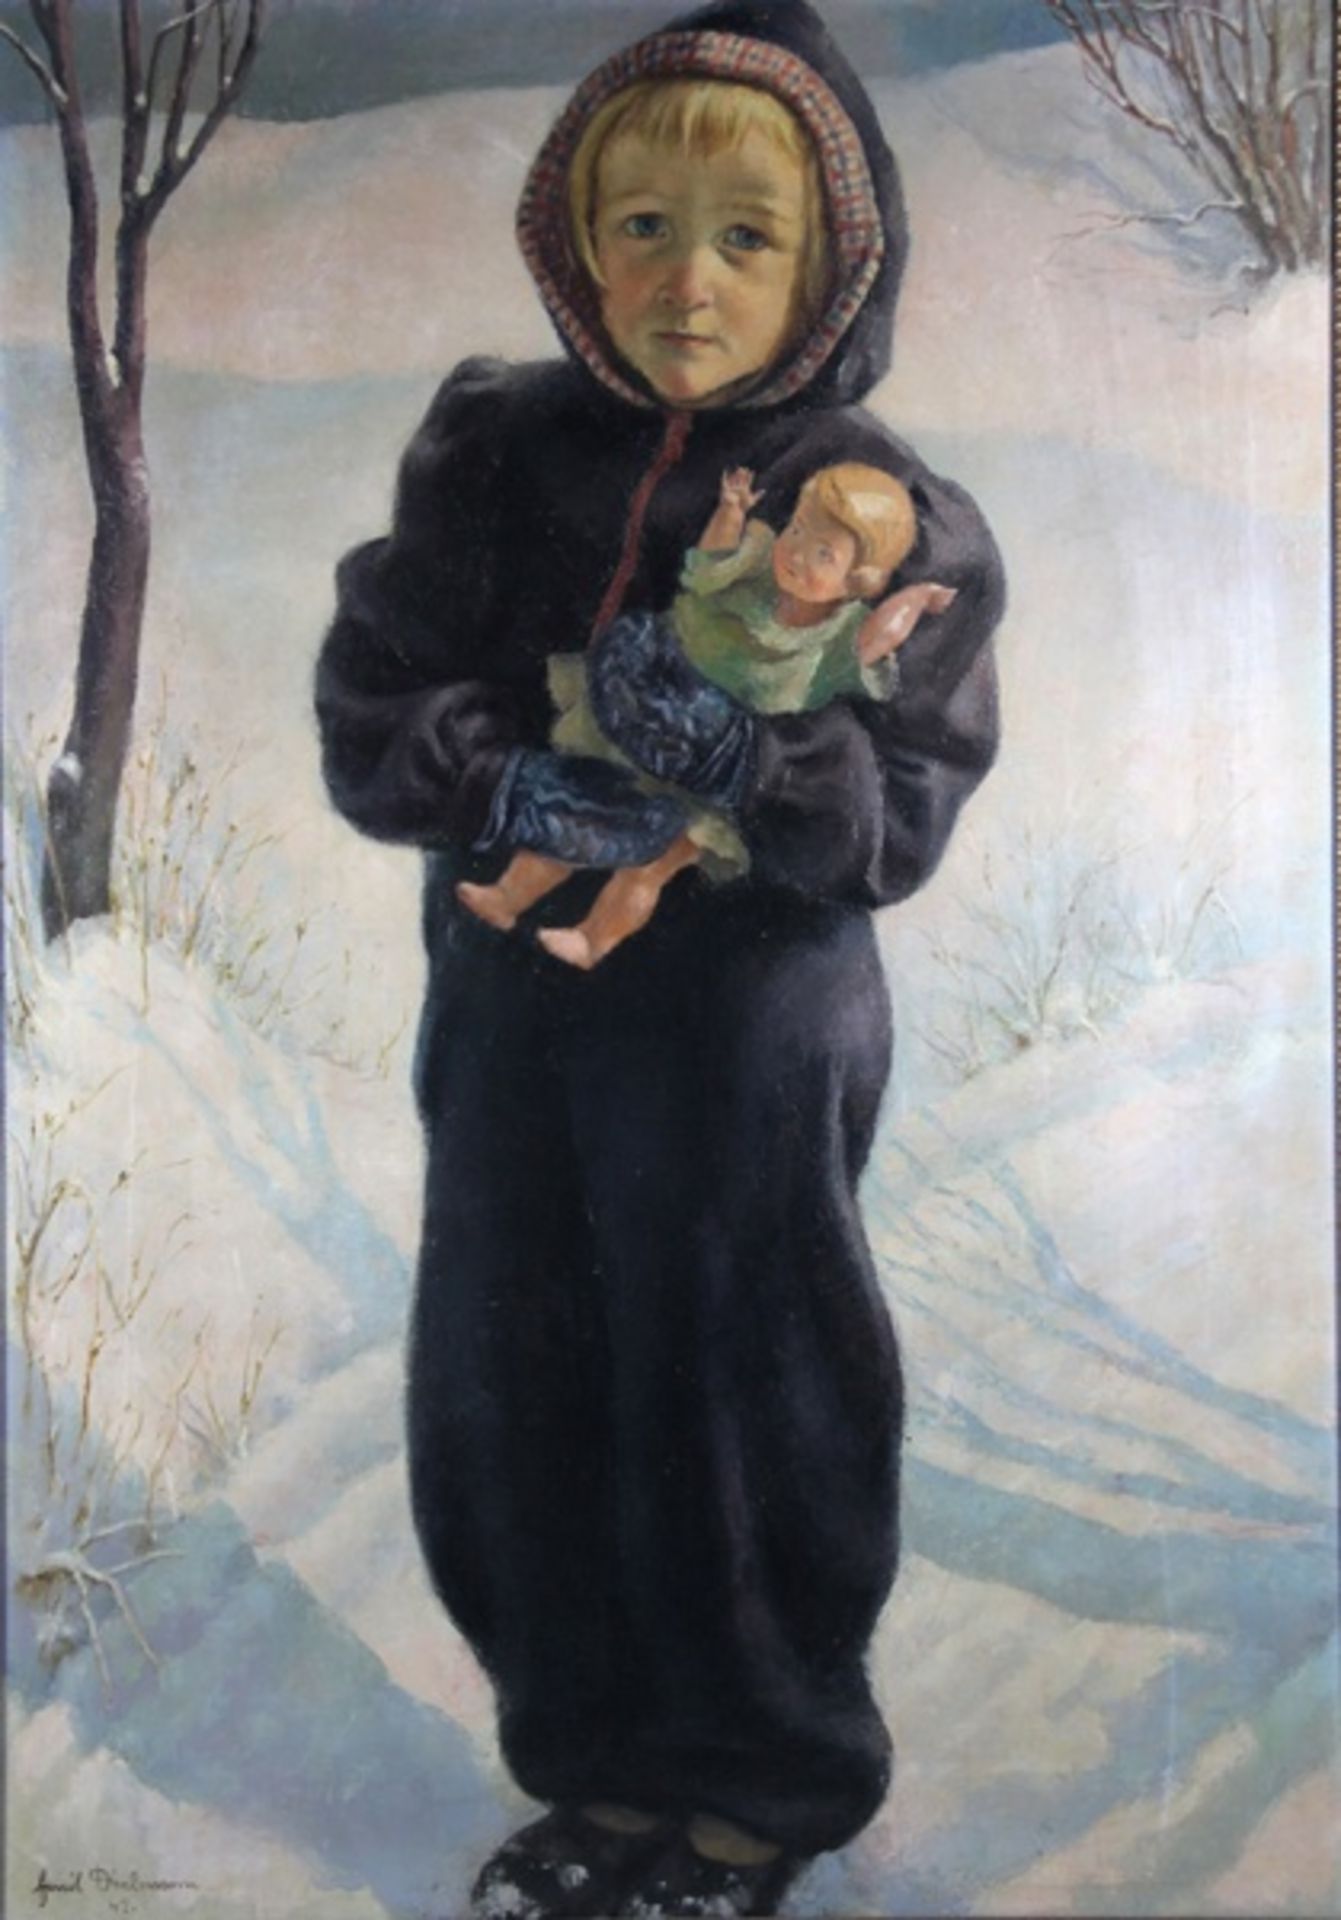 Dielmann, Emil1897-1954, ganzfiguriges Bildnis eines kleinen blonden Mädchens im Schnee, eine Kapuze